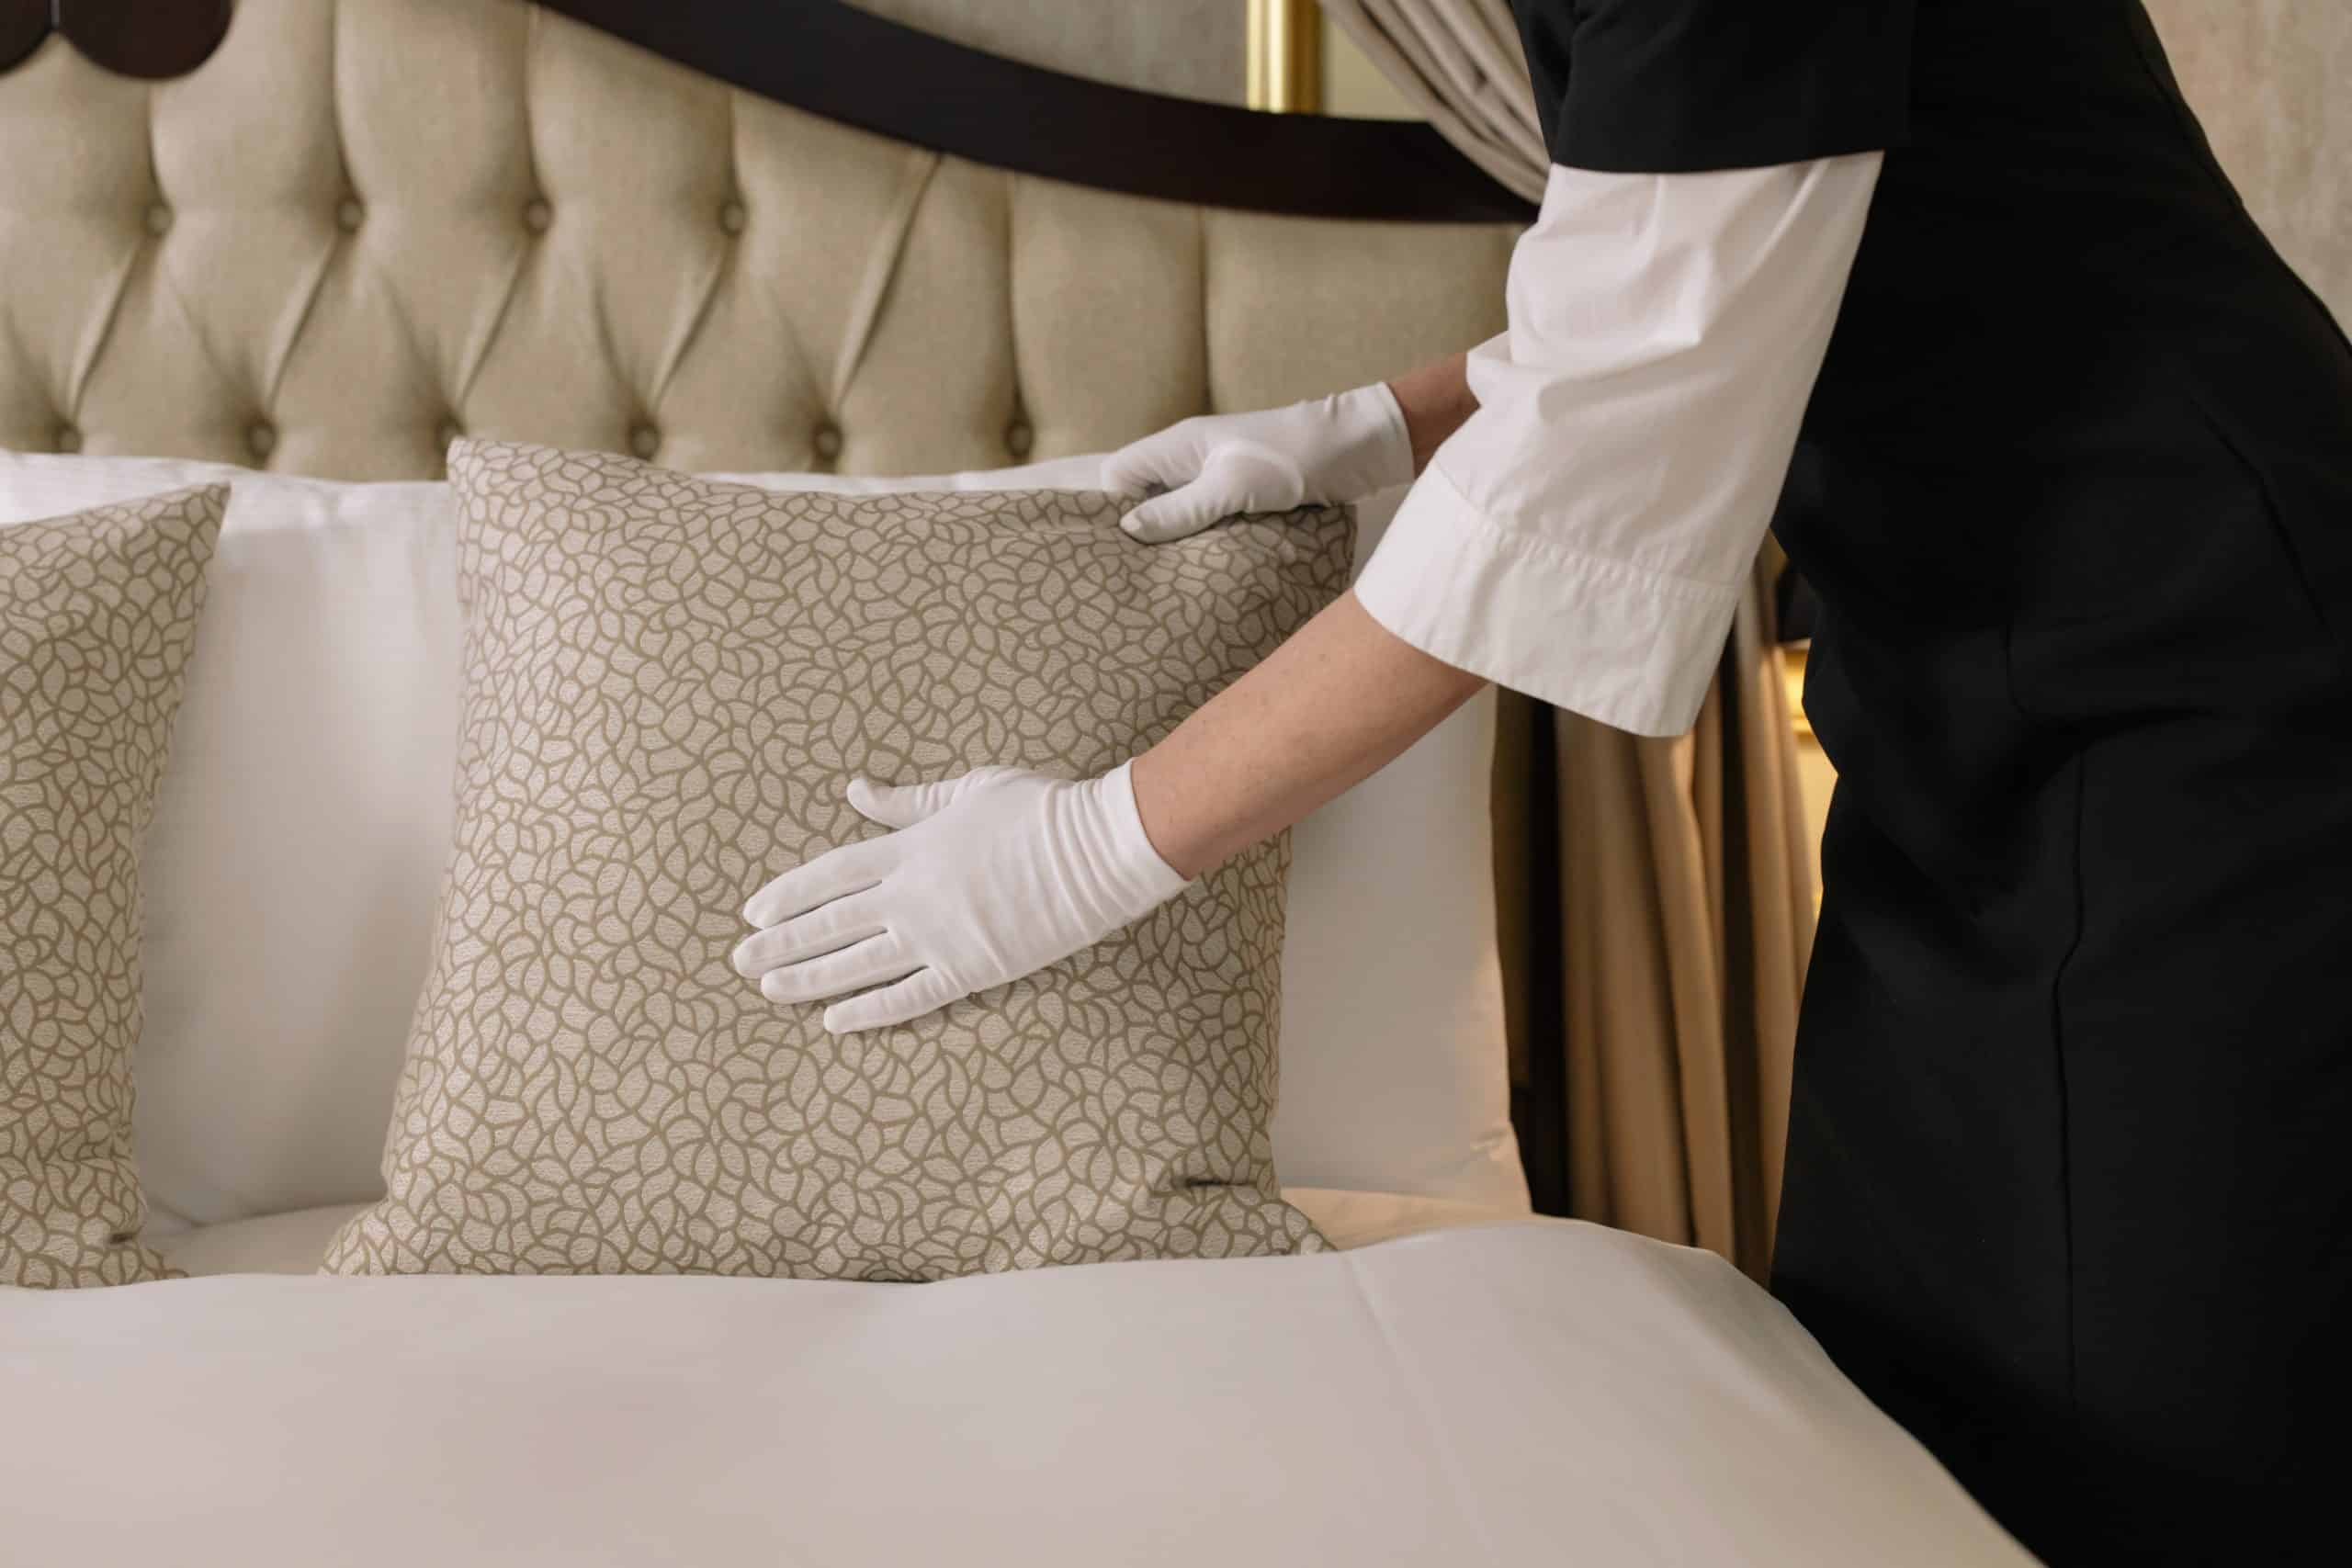 Hotel worker fluffs a pillow.